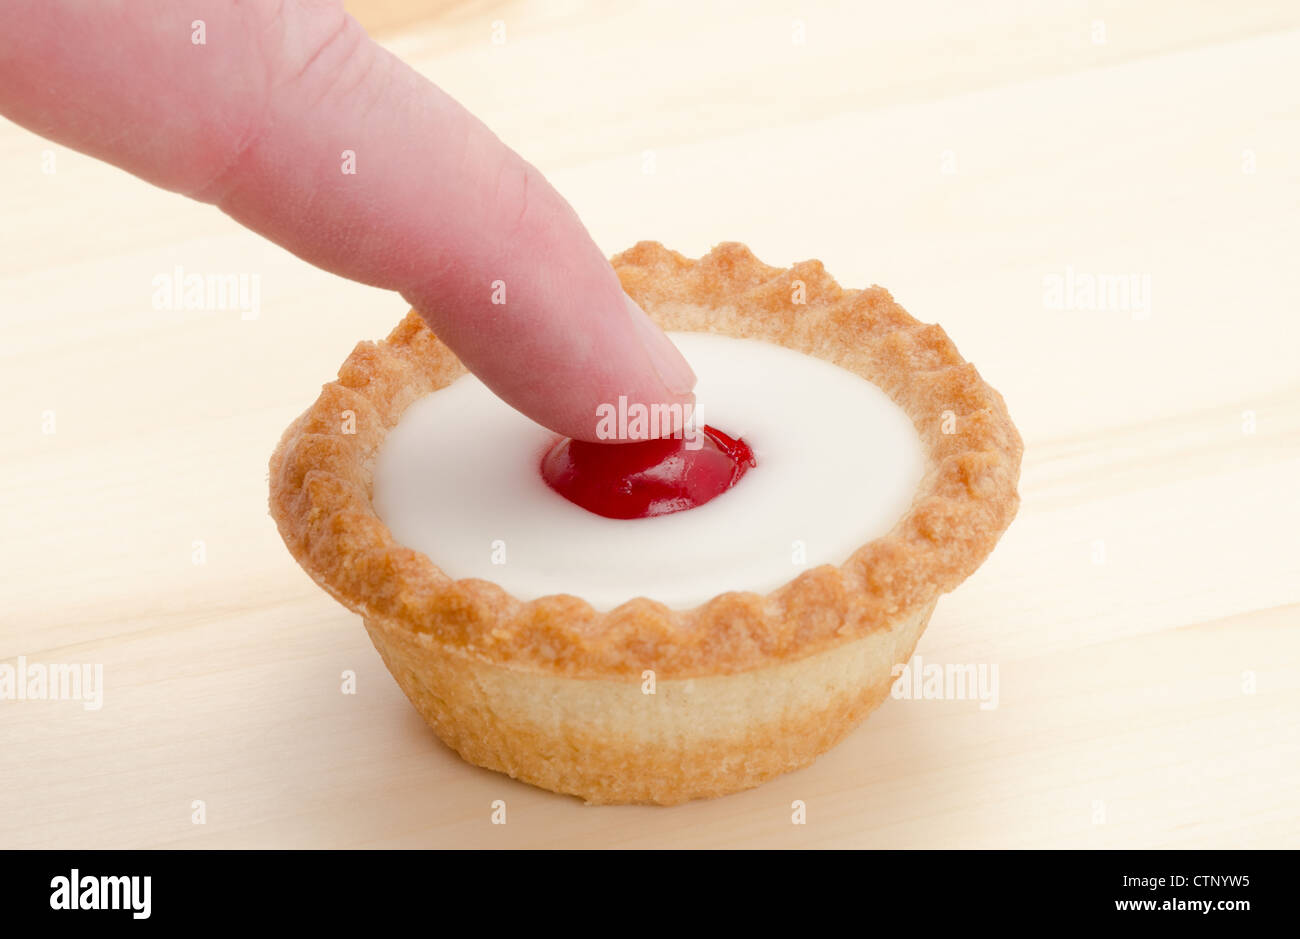 Premere il tasto ! Concetto di immagine di un dito di spinta sul la ciliegia nel centro di Bakewell tart torta. Foto Stock